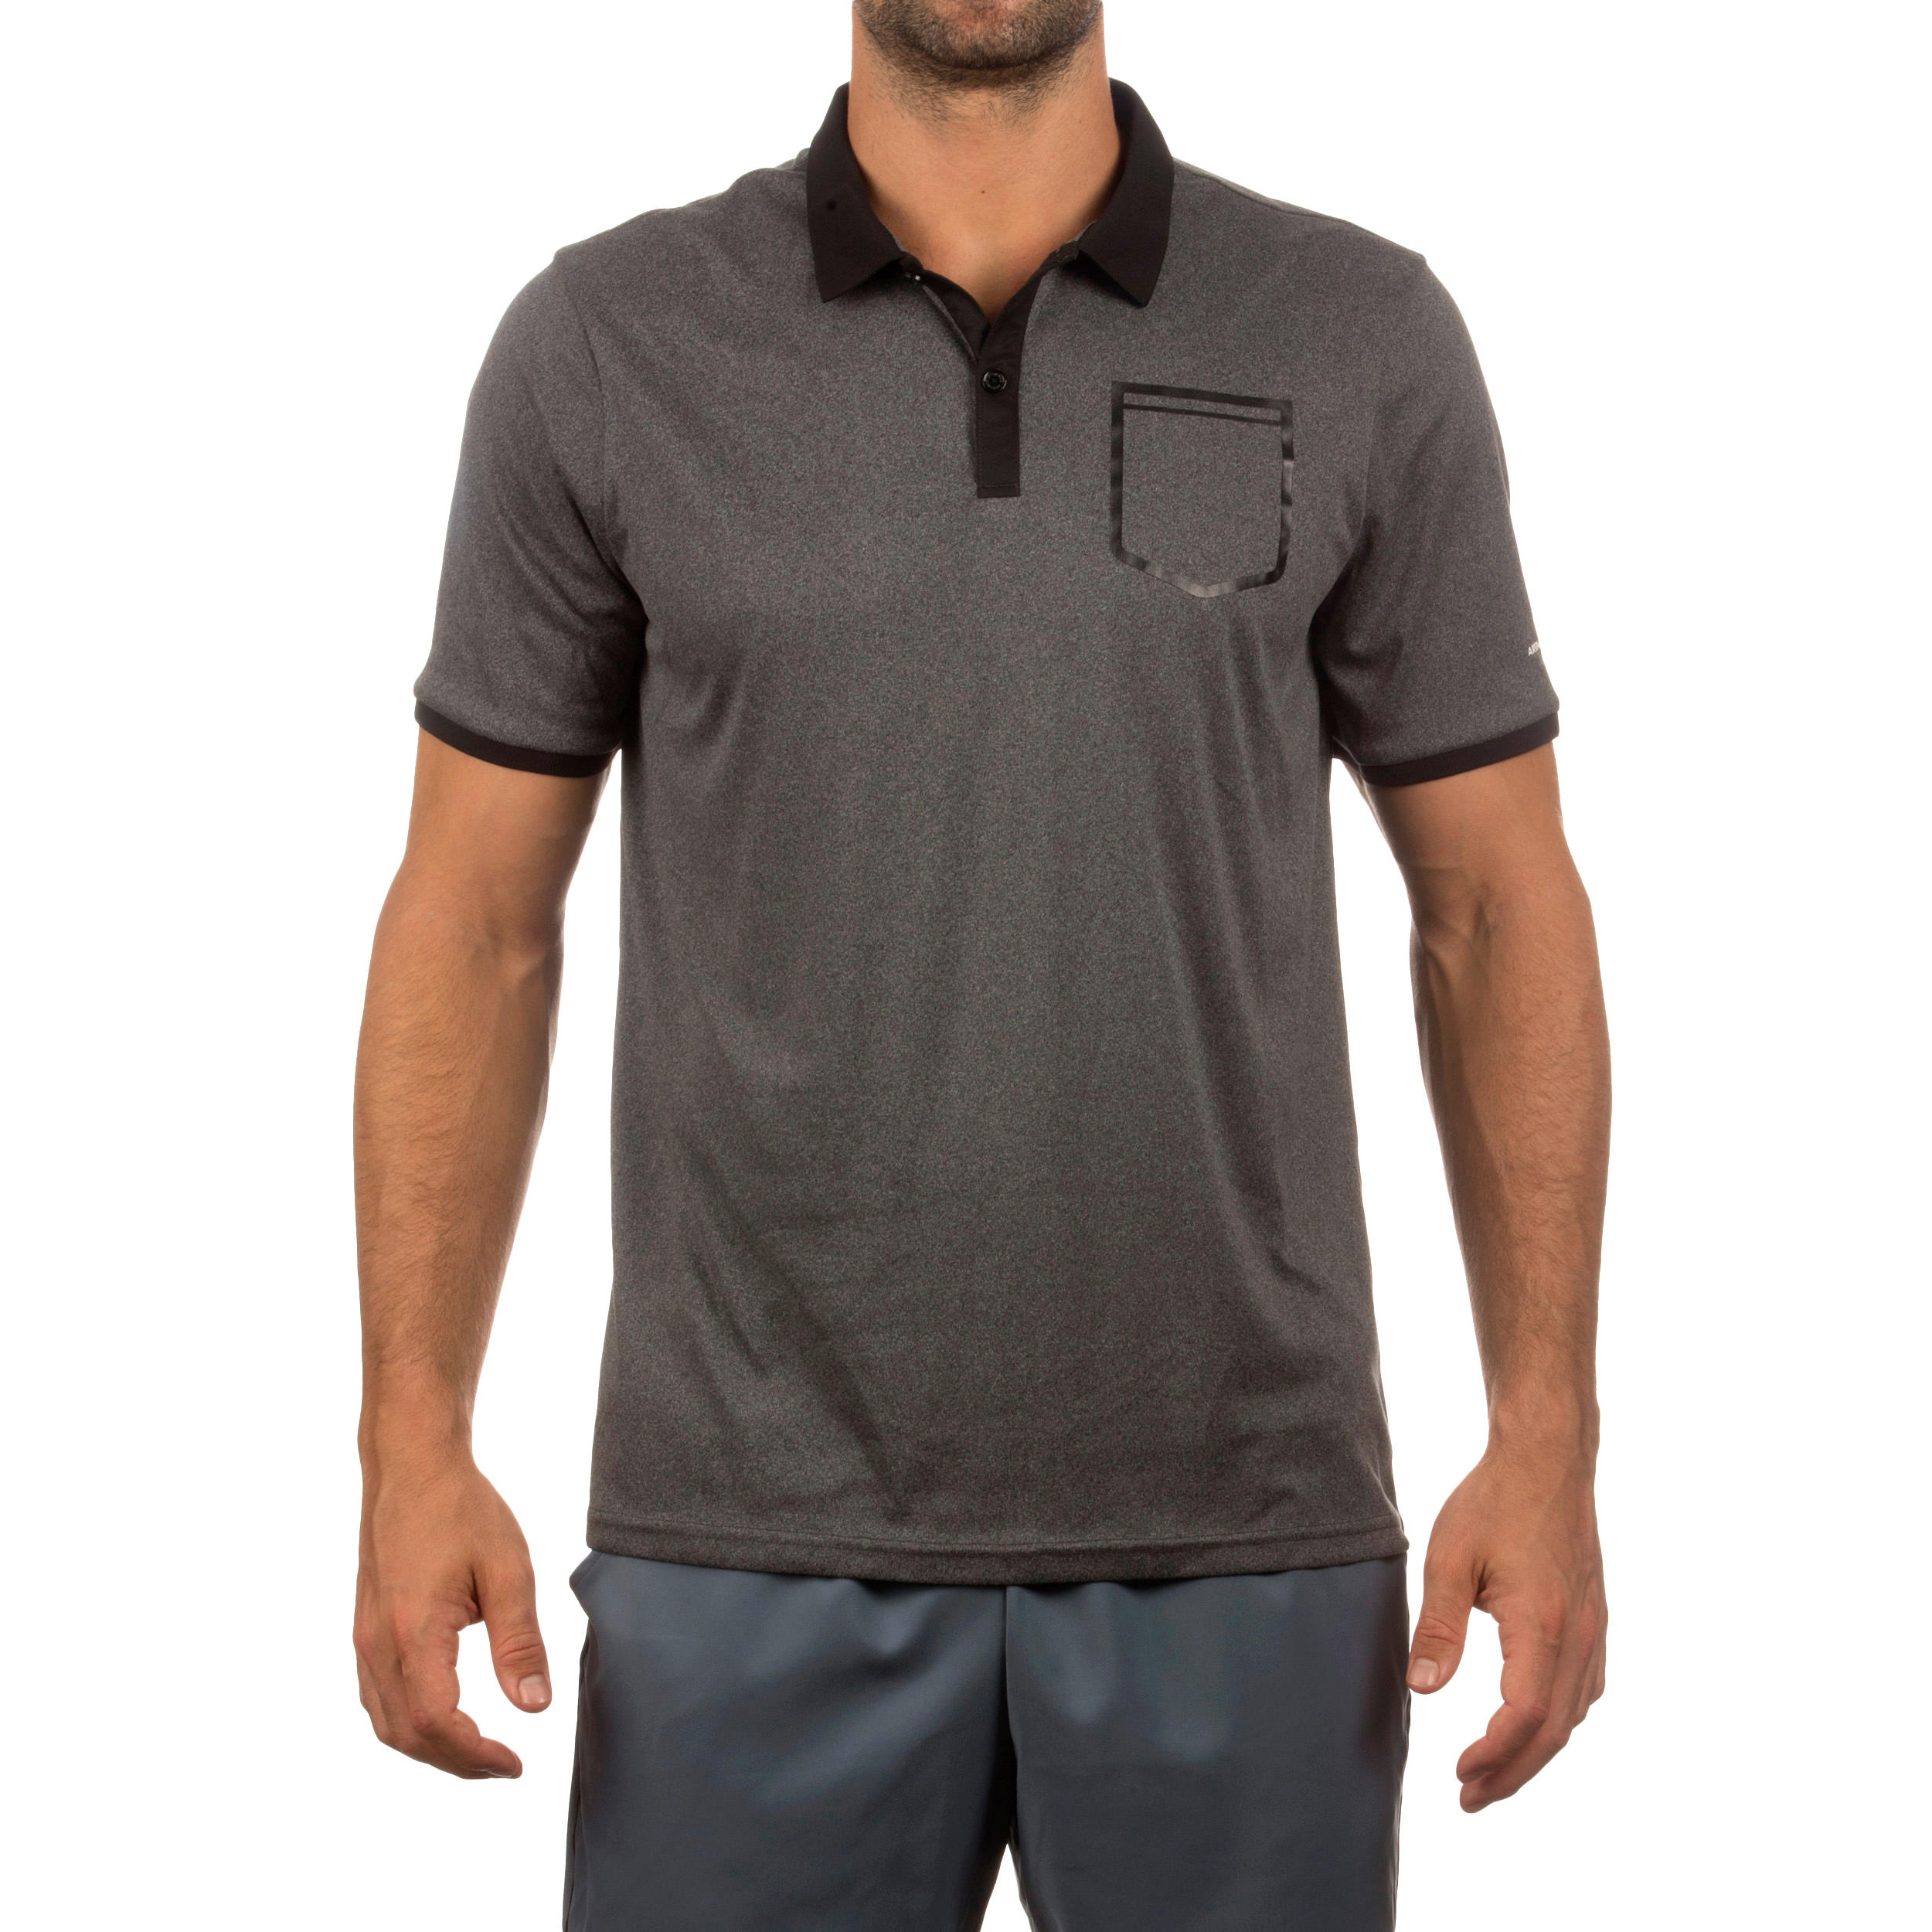 Soft Padel Tennis Badminton Squash Table Tennis Pocket Polo Shirt - Dark Grey 2/6